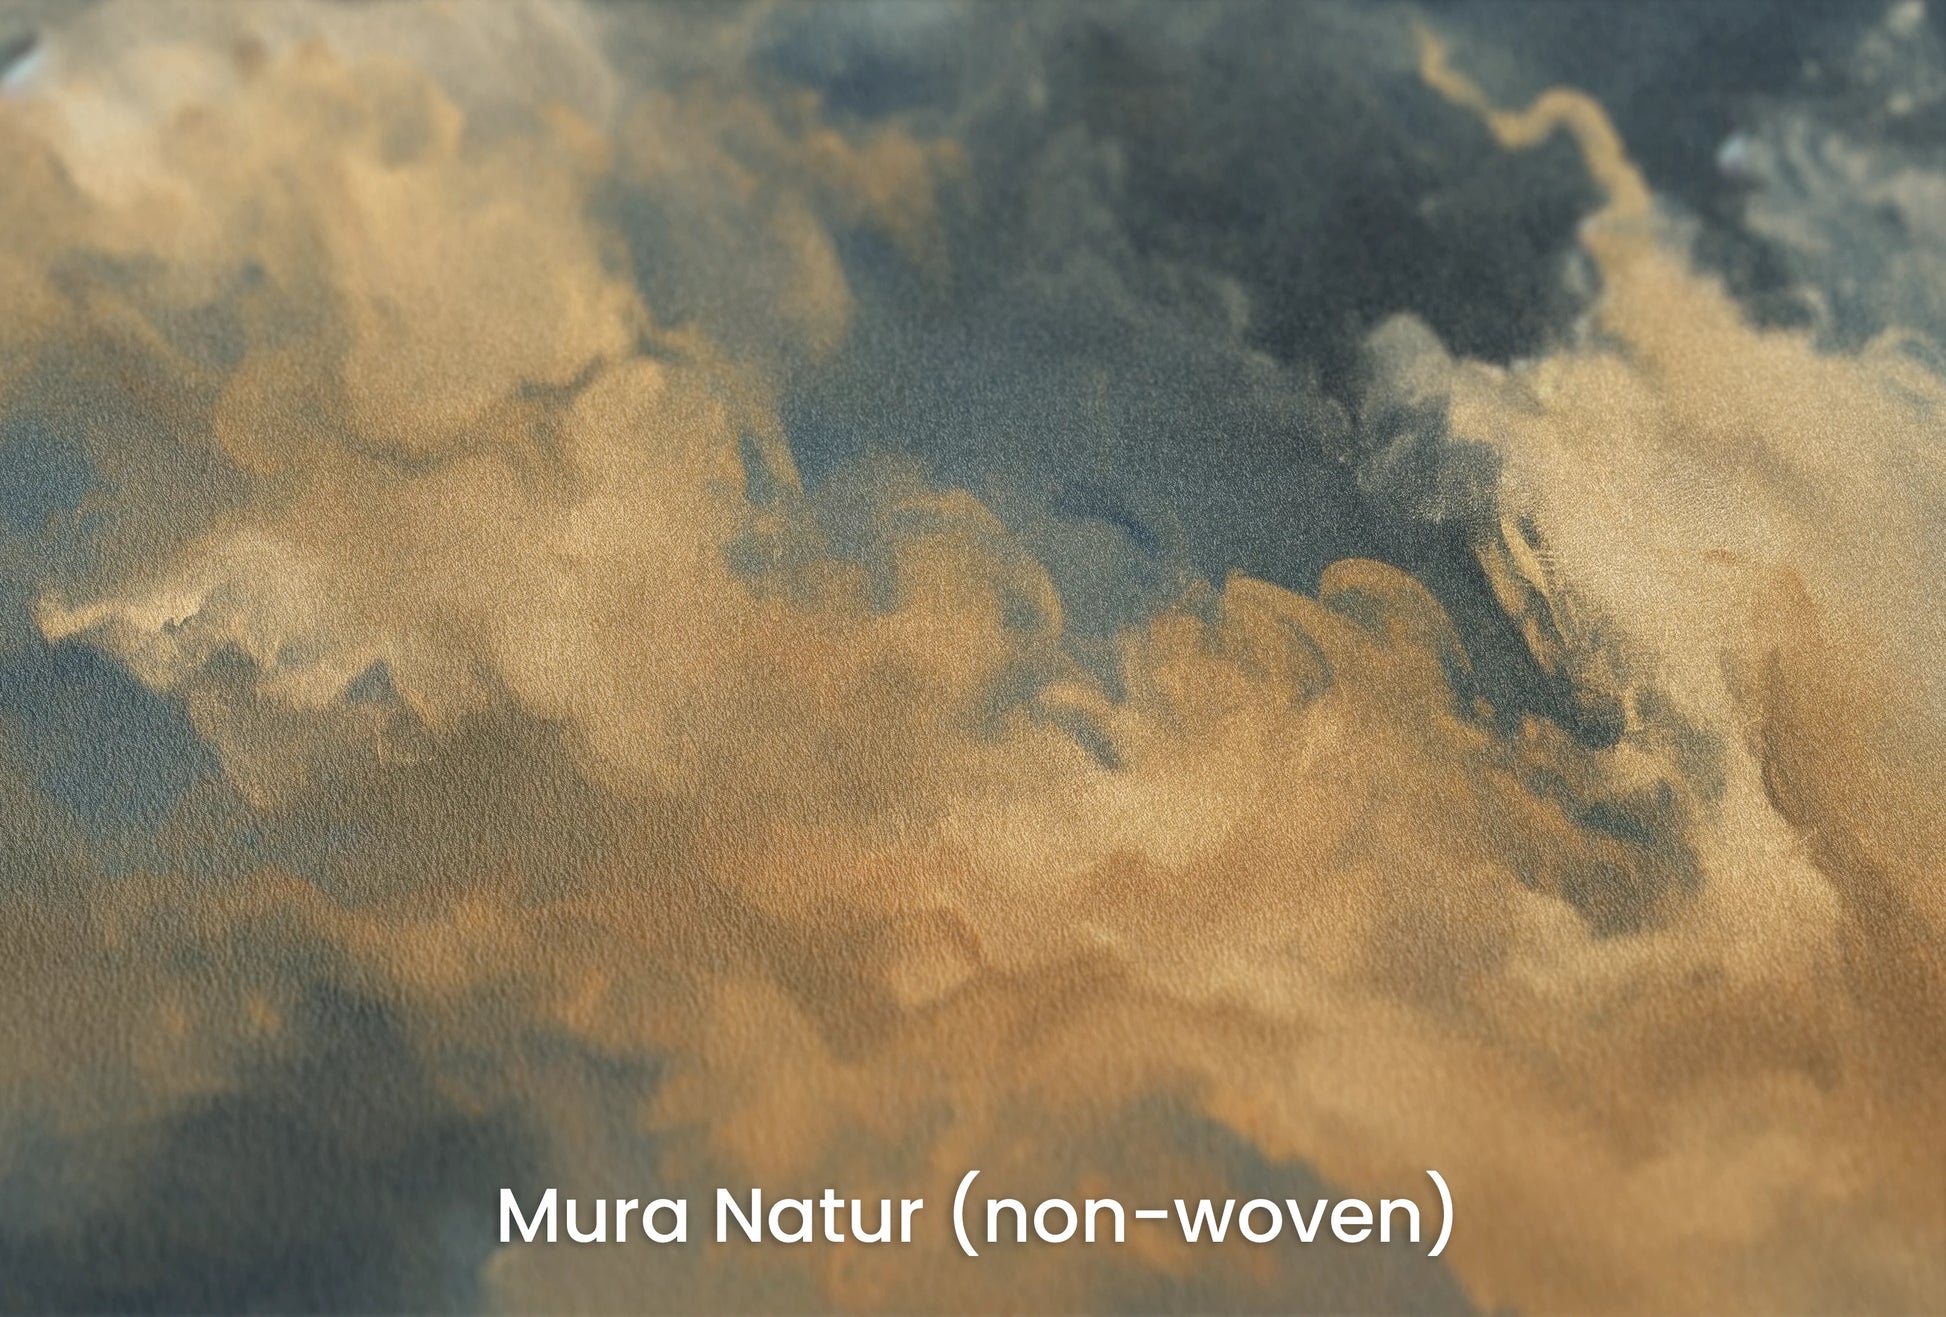 Zbliżenie na artystyczną fototapetę o nazwie Storm's Embrace na podłożu Mura Natur (non-woven) - naturalne i ekologiczne podłoże.